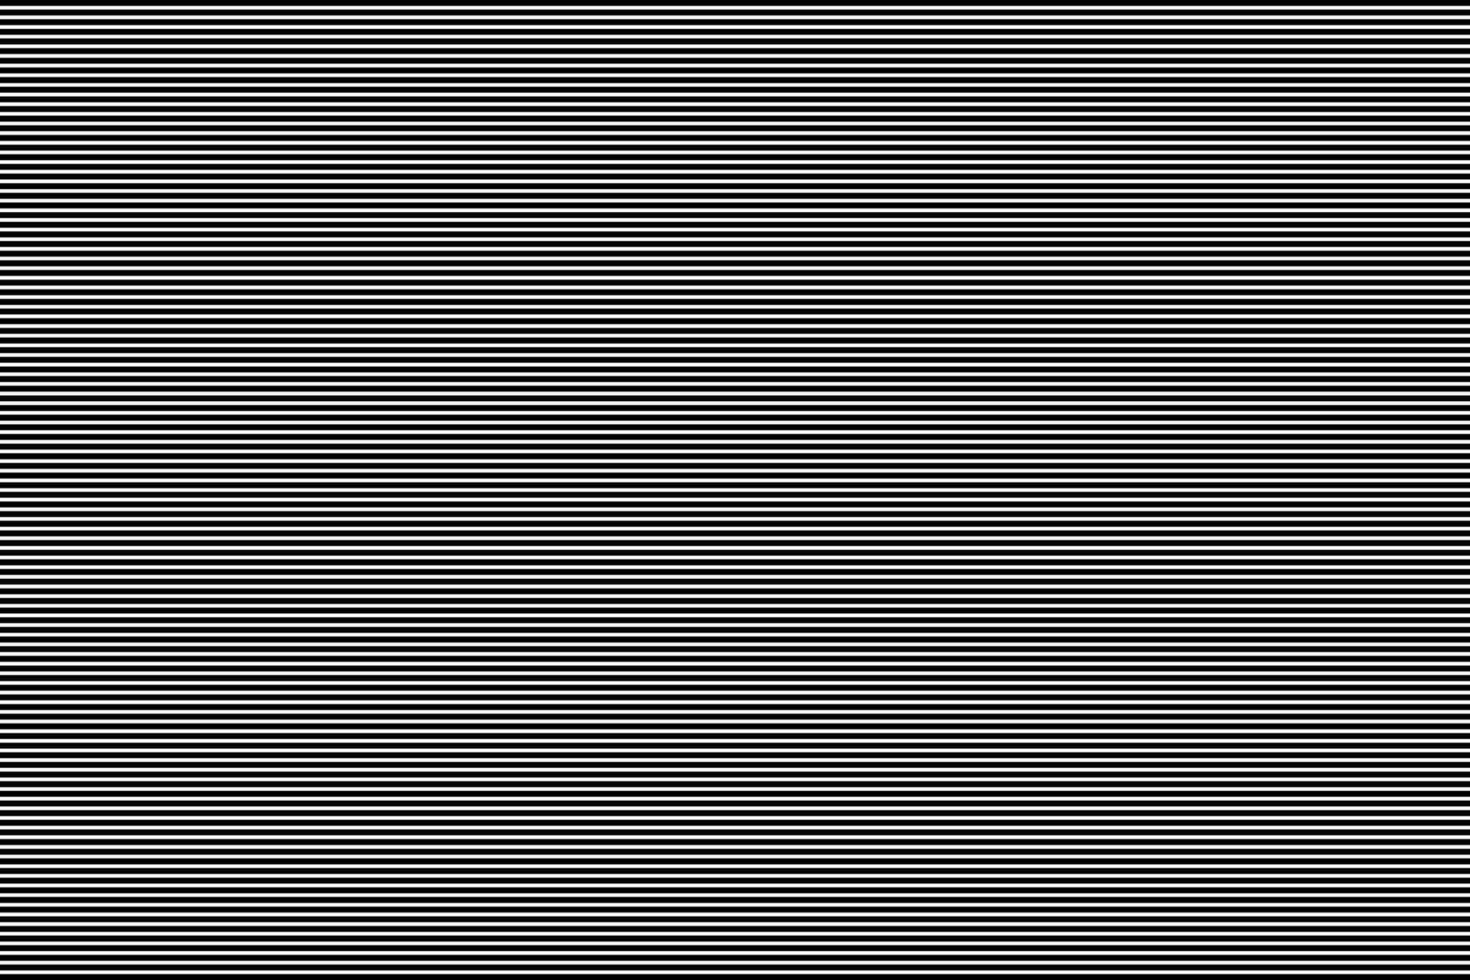 zwart en wit horizontaal lijnen naadloos patroon. getextureerde strepen achtergrond vector illustratie.